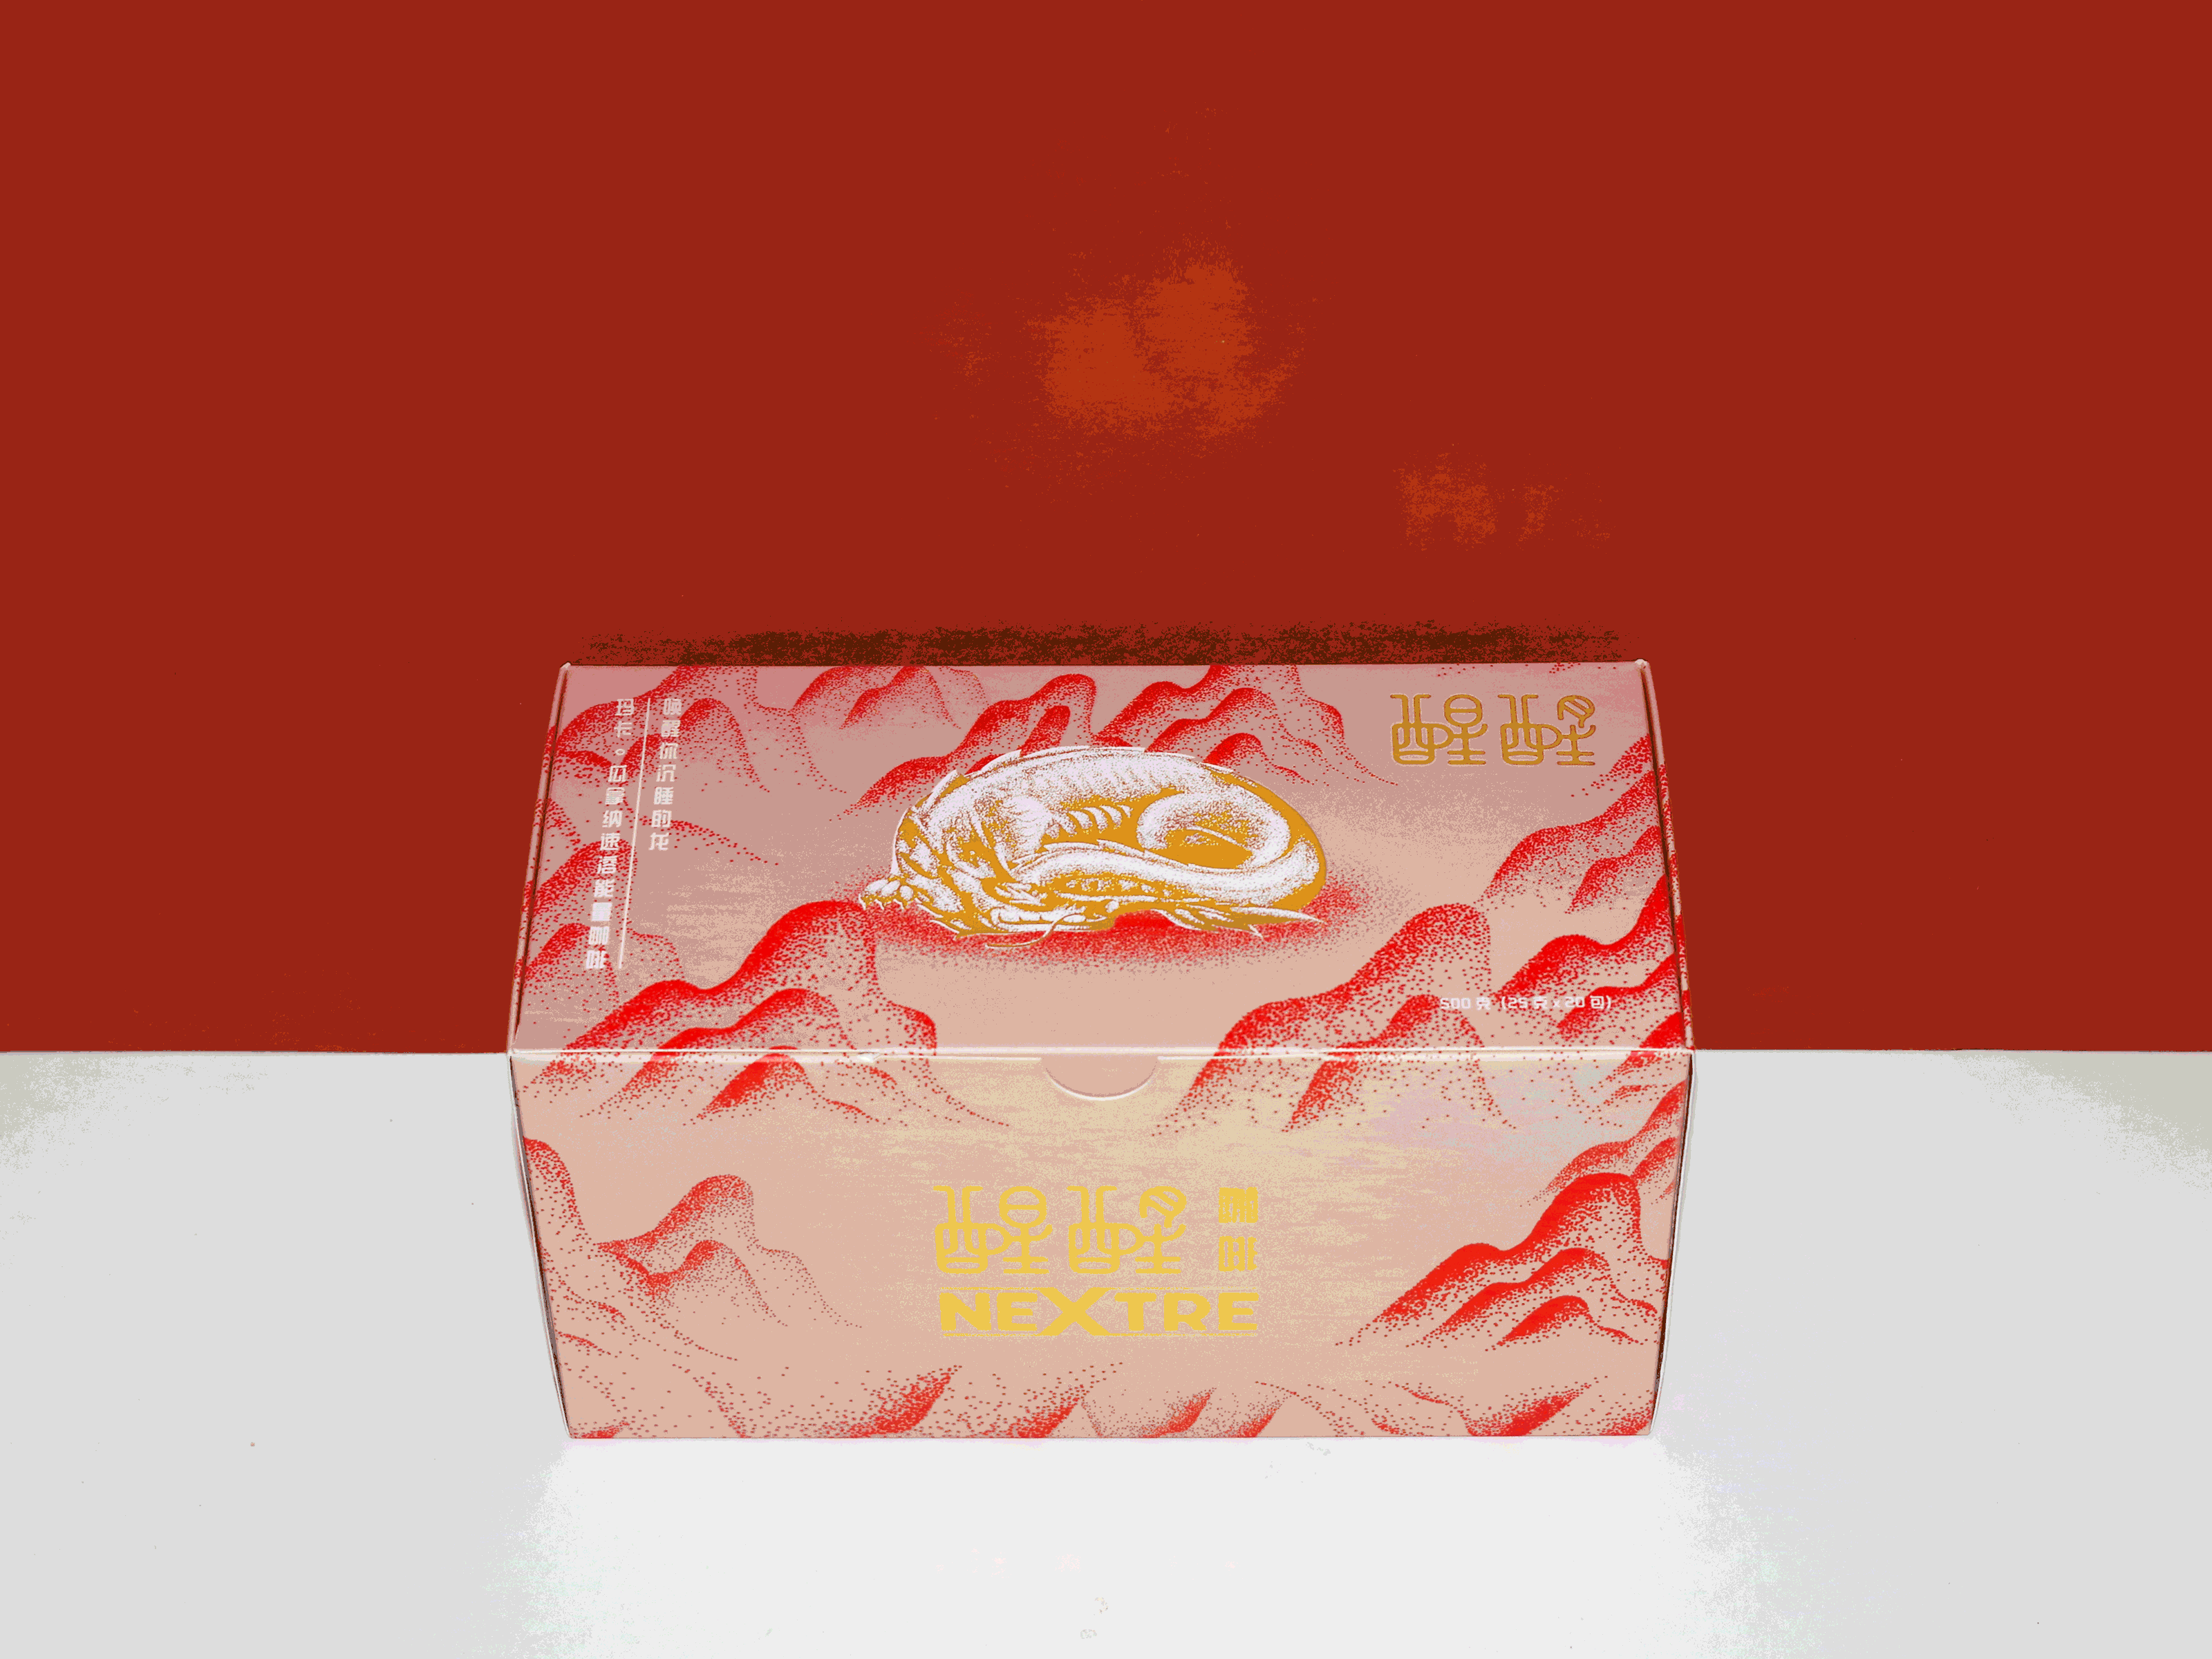 醒醒咖啡 packing design featuring gold stamping and design detail top cover and inner view